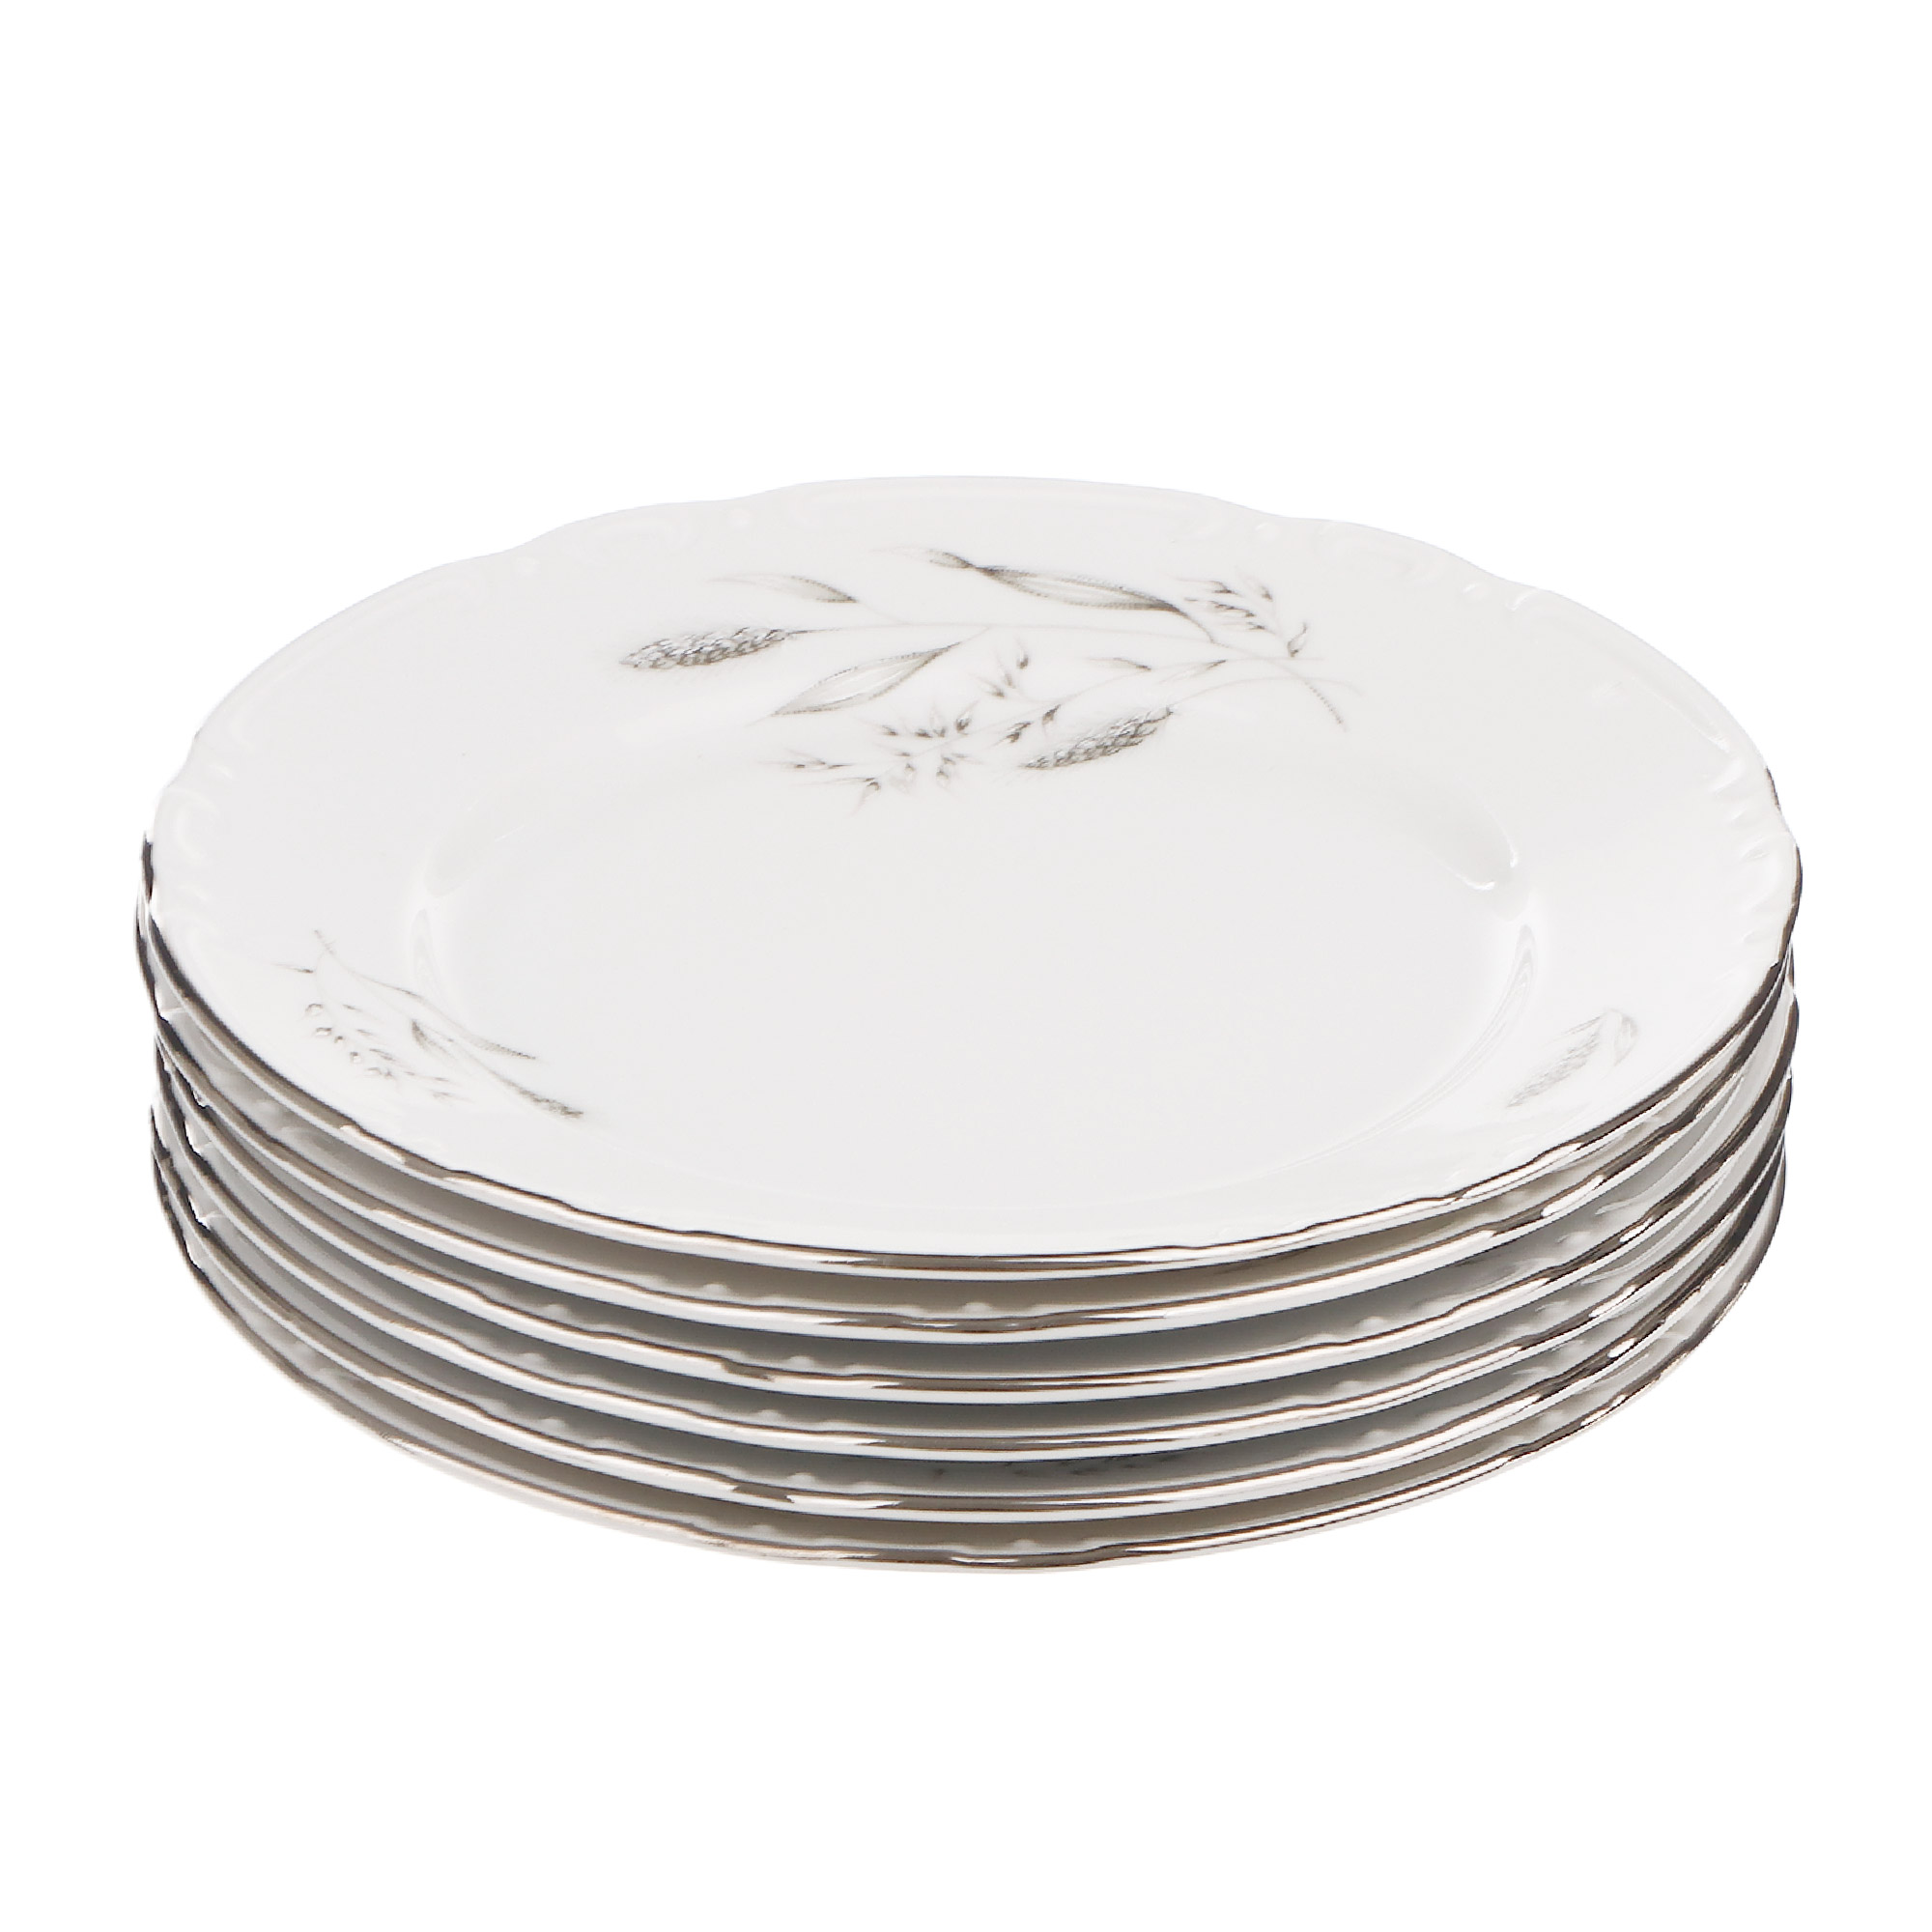 Набор десертных тарелок Thun1794 декор серебряные колосья, отводка платина 17 см 6 шт салатник 25 см thun1794 декор серебряные колосья отводка платина